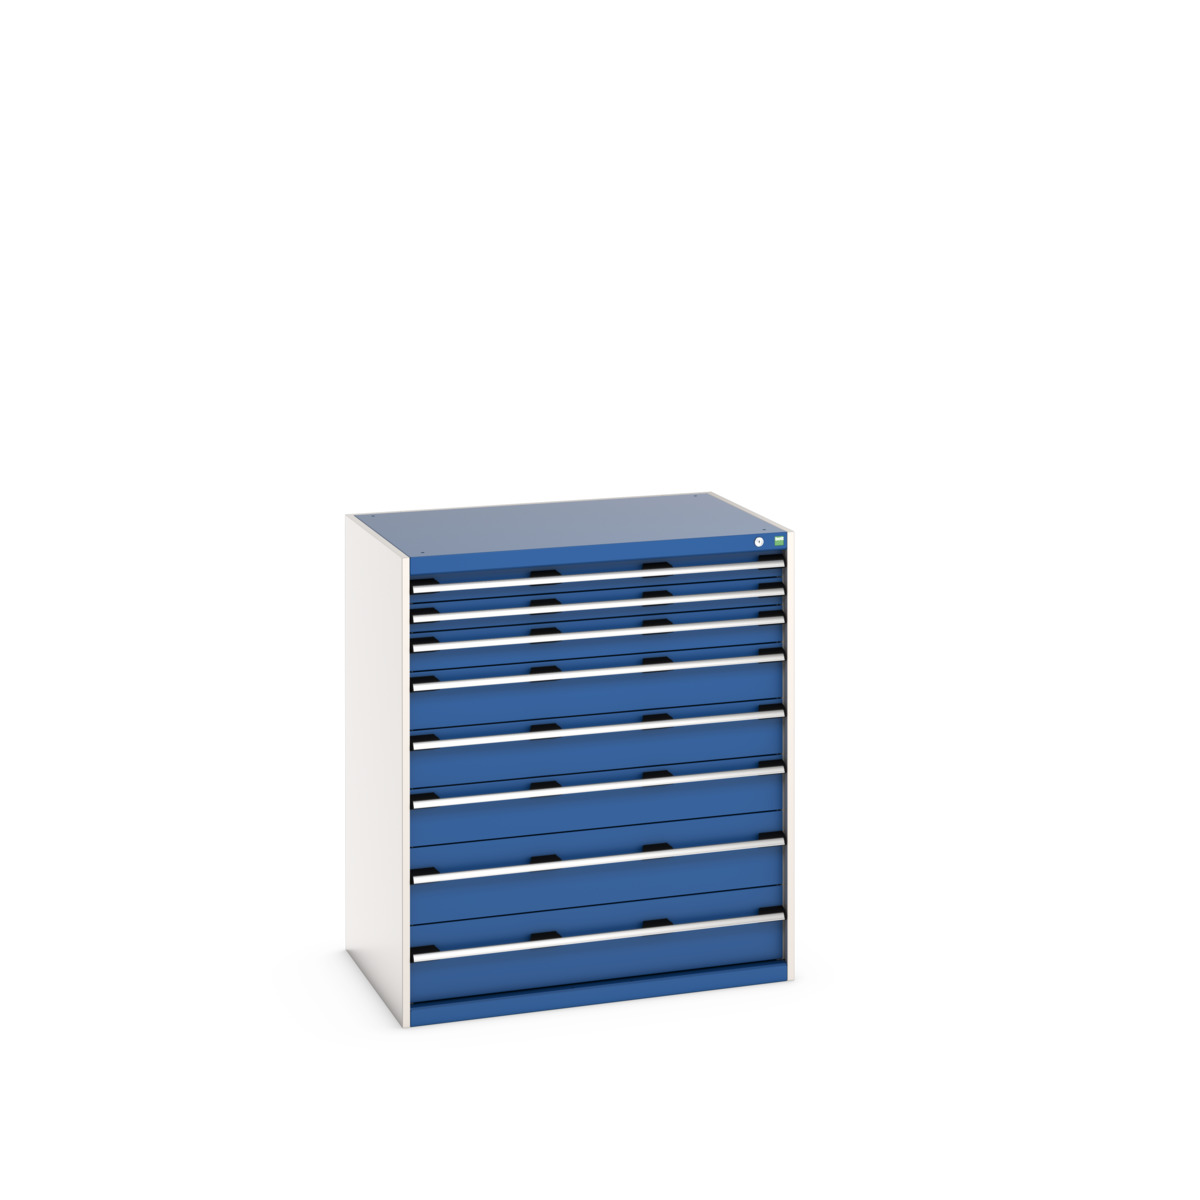 40029032.11V - cubio drawer cabinet